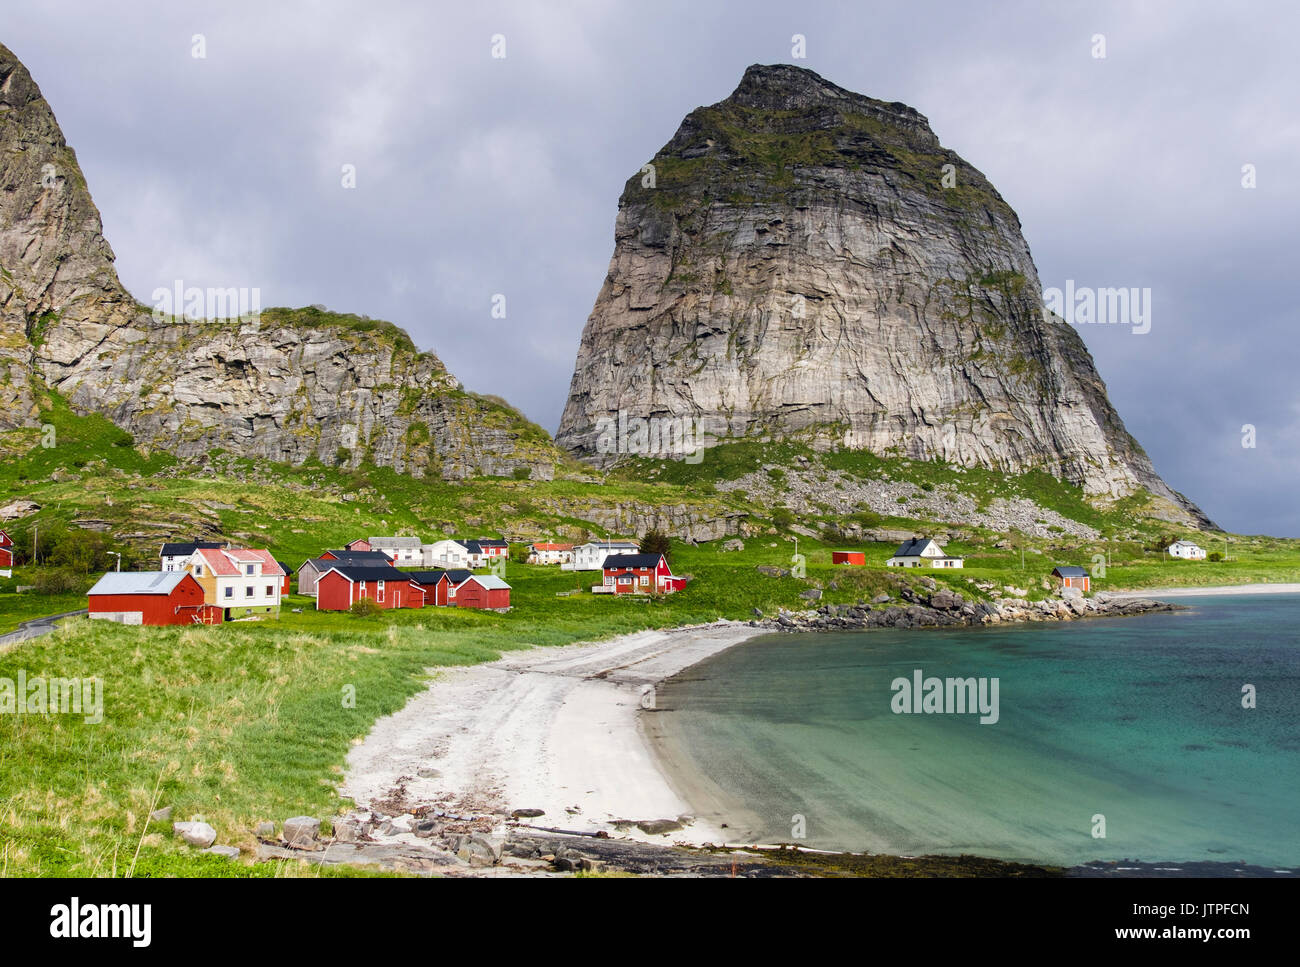 Sanna un vecchio ex villaggio di pescatori case al di sotto Traenstaven montagne in estate su Sanna isola, Traena, Nordland county, Norvegia e Scandinavia Foto Stock